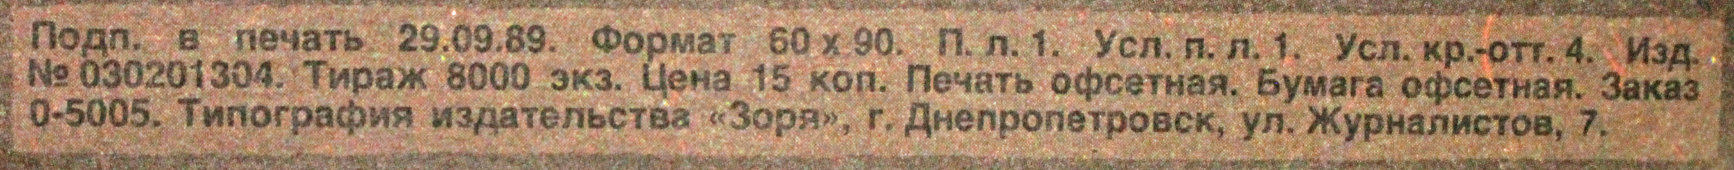 Советский агитационный плакат «Пора отдавать долги!», художник Е. Курманаевская, 1990 г.